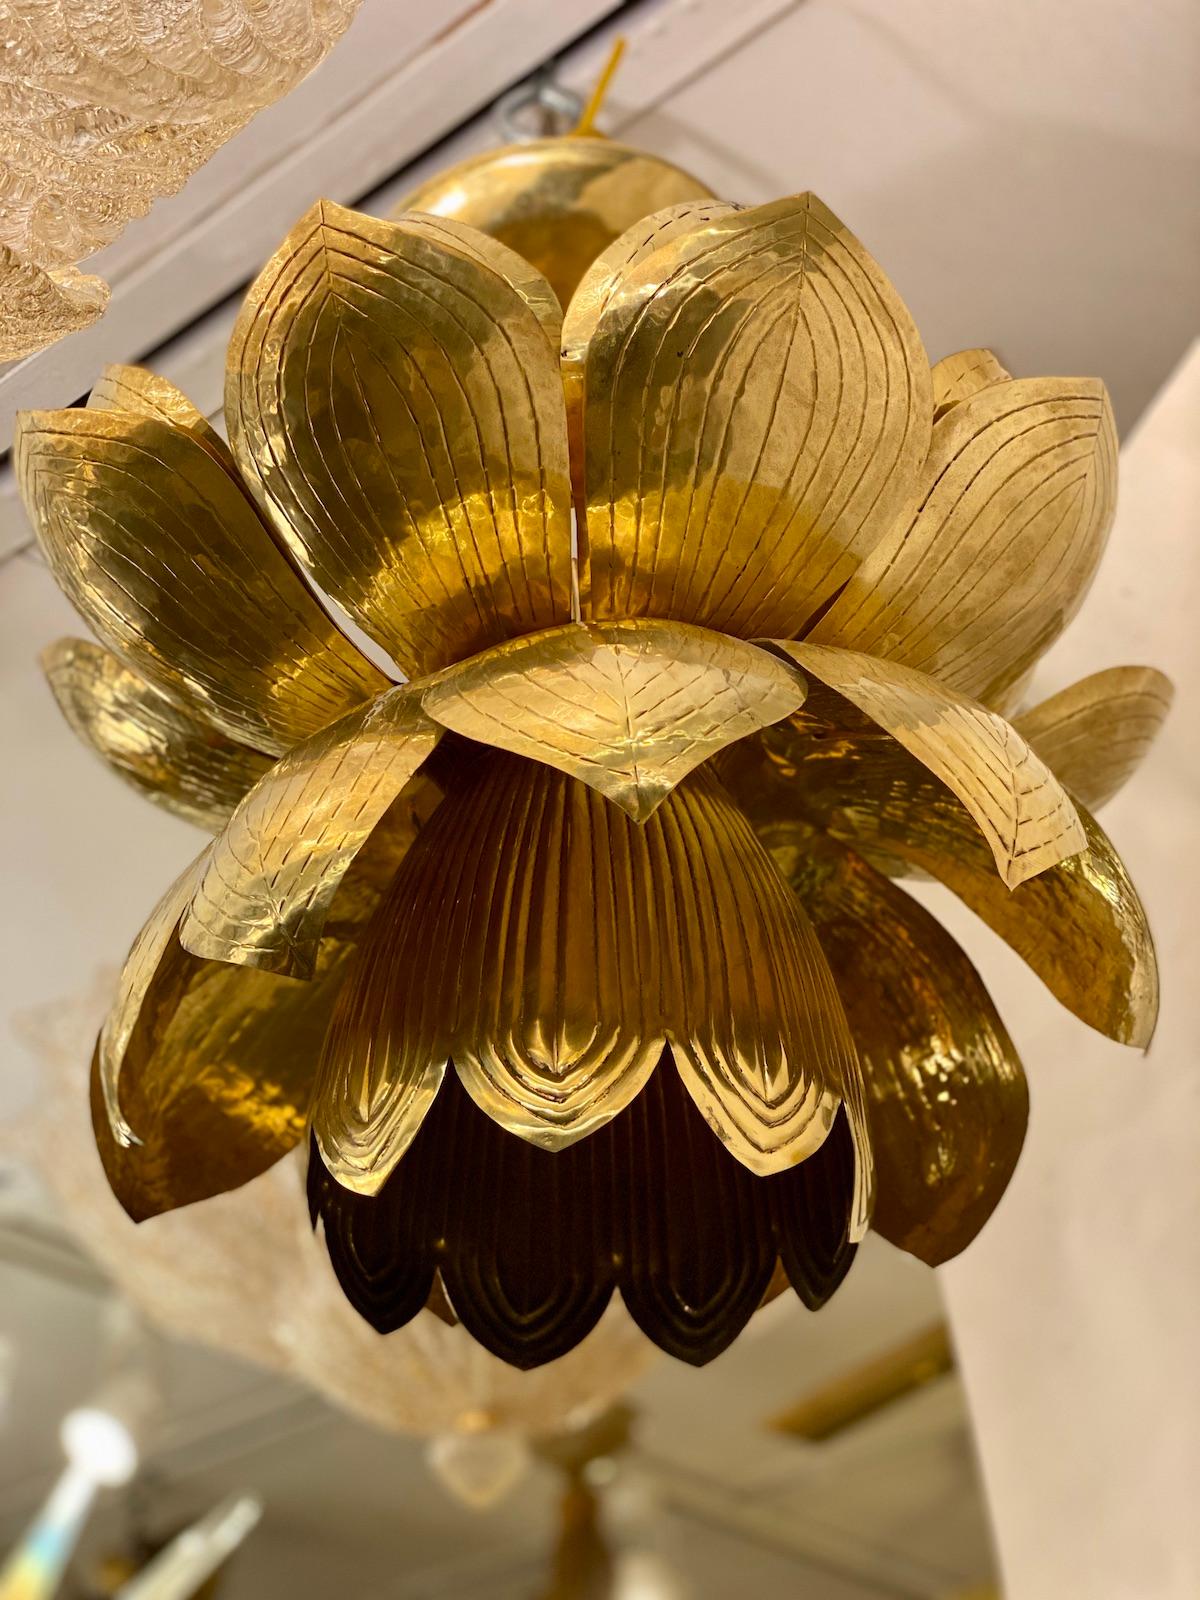 Un ensemble de six luminaires italiens en laiton repoussé à fleur de lotus, datant des années 1960, avec trois lumières intérieures. Vendu à l'unité.

Mesures :
Chute : 17